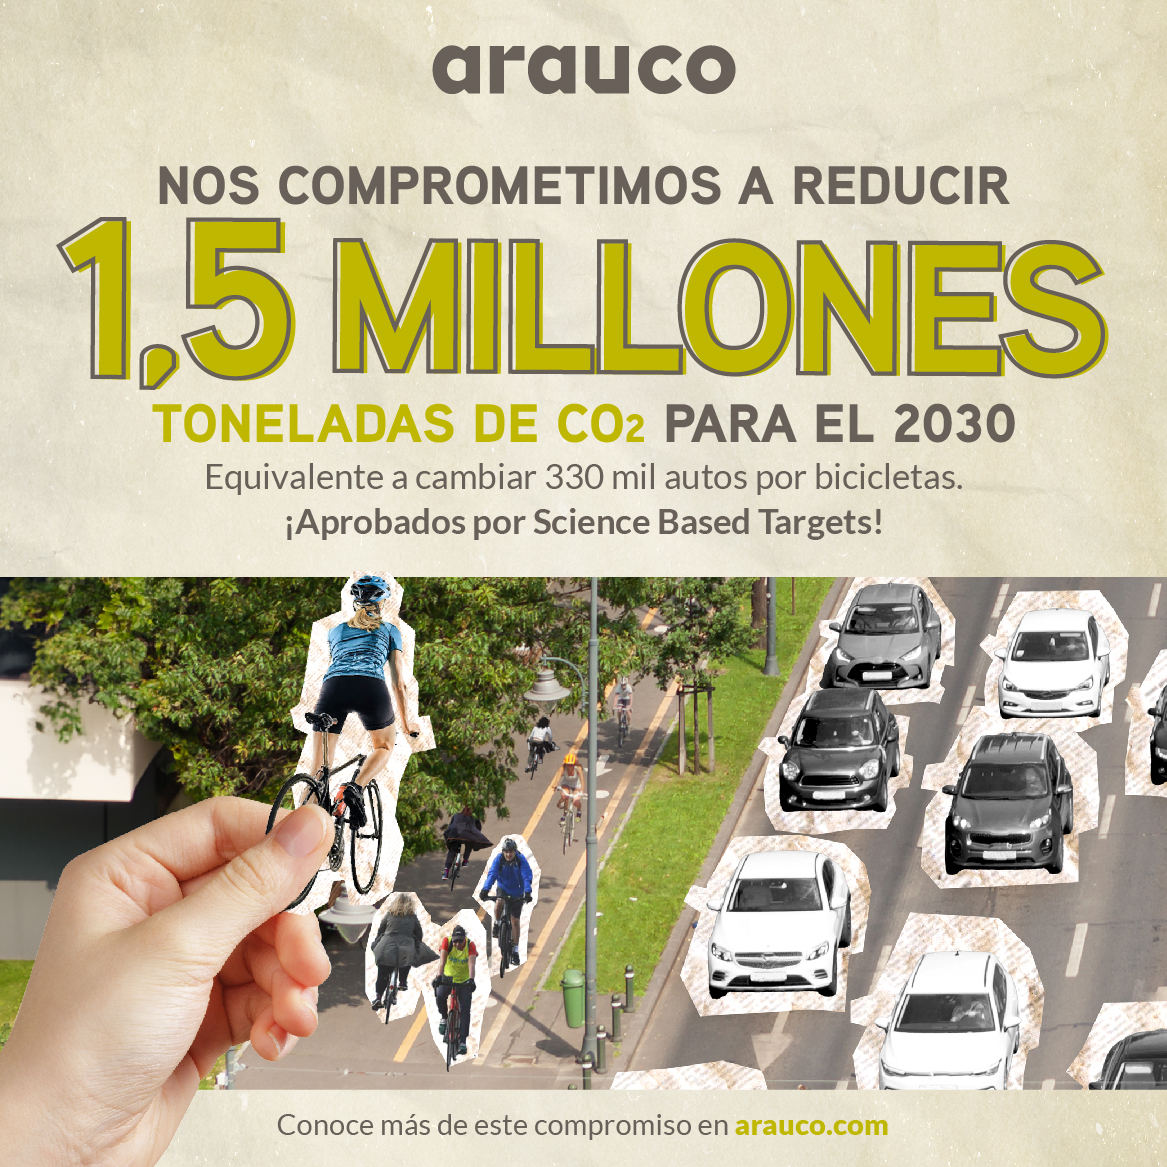 ARAUCO recibe aprobación de Science Based Targets y compromete la reducción de sus emisiones en más de 1,5 millones de toneladas al 2030